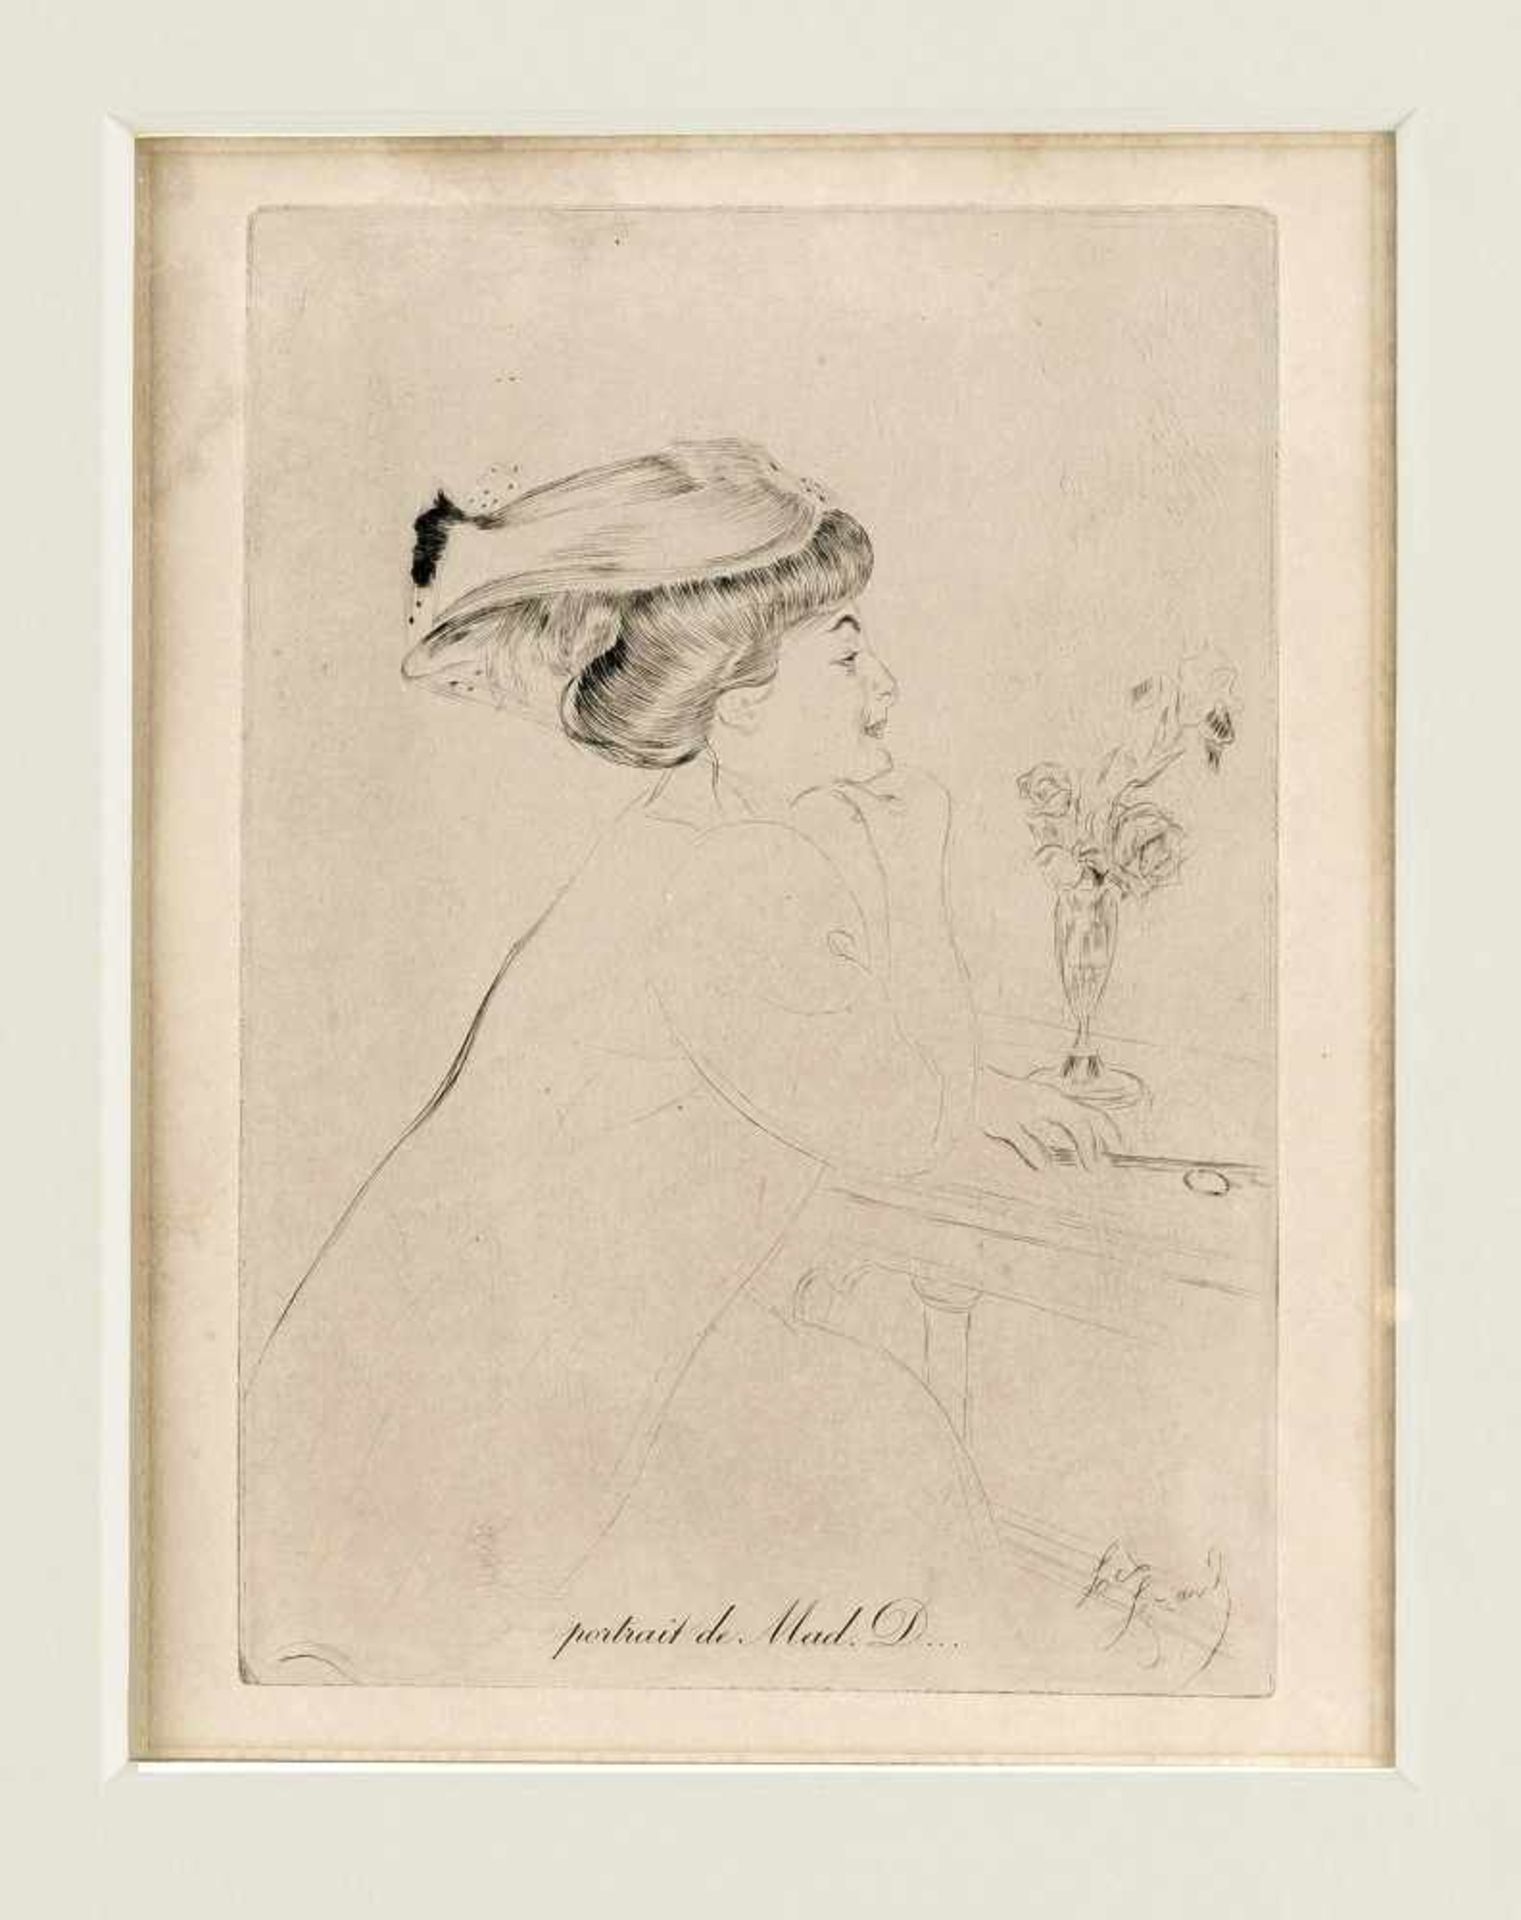 Louis Legrand (1863-1951), Portrait de Mme. D., Radierung auf Kupferdruckpapier, 1895, rechts